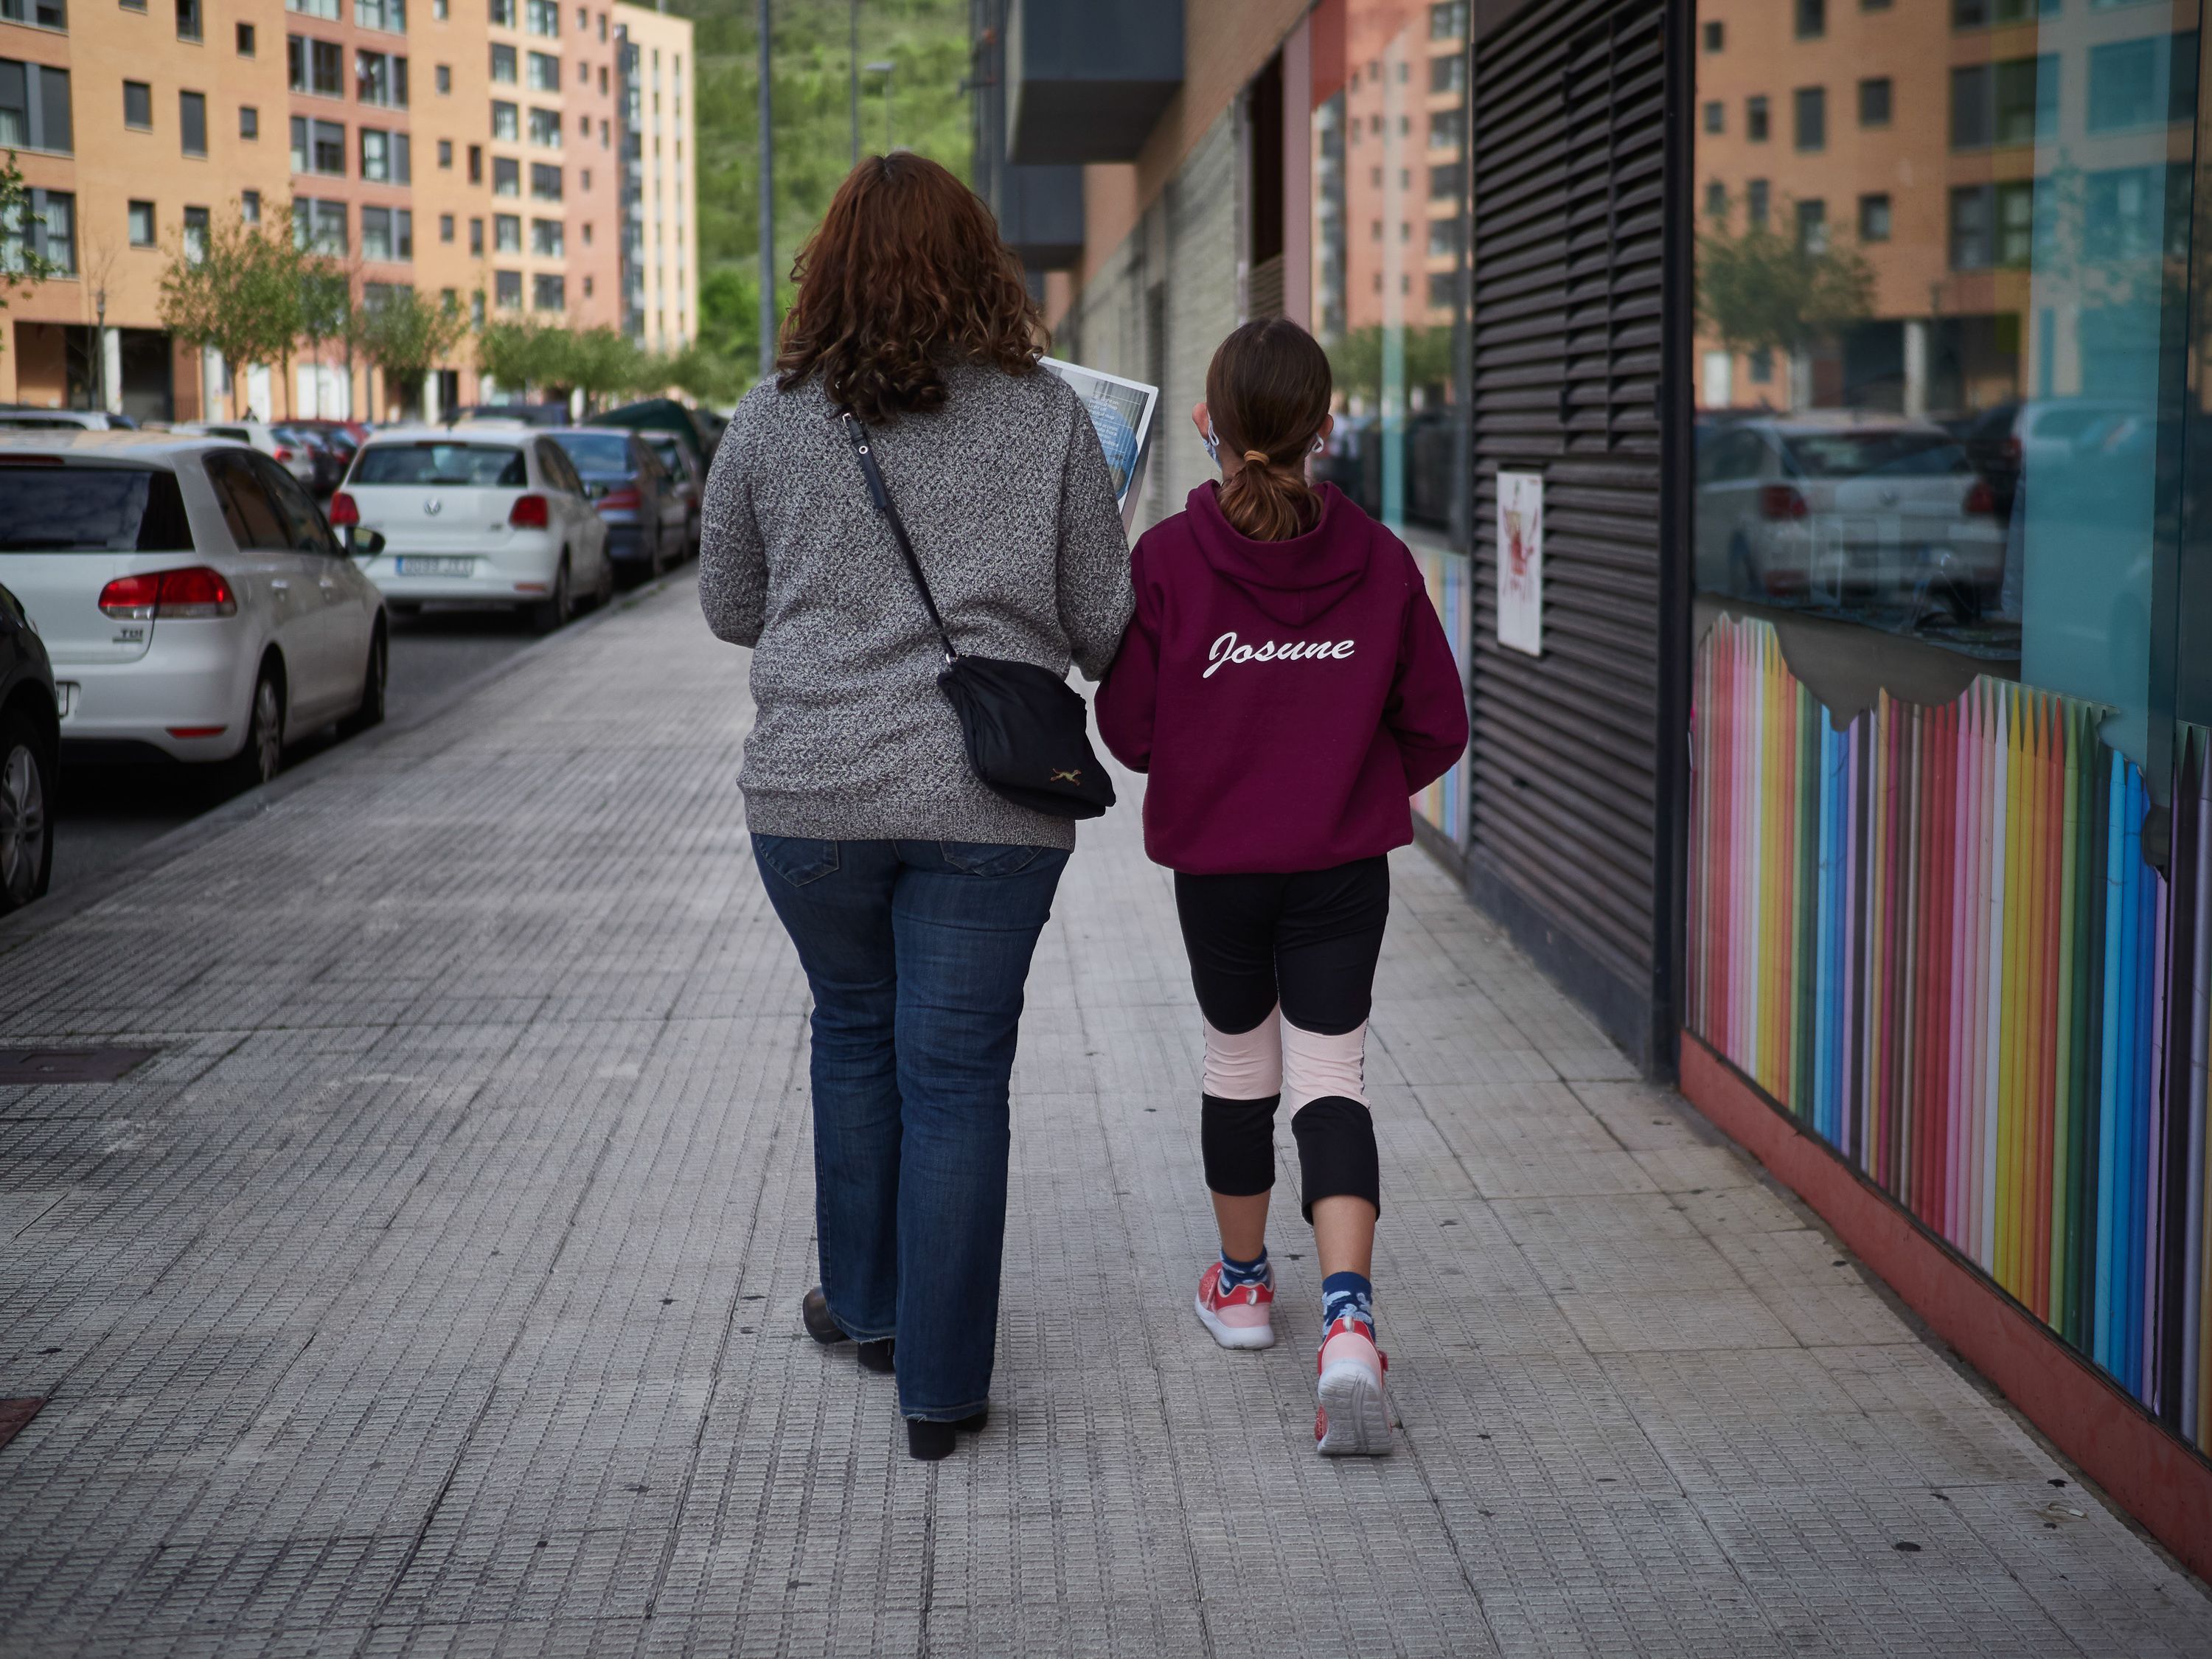 El Gobierno deja que abuelos que conviven con niños les lleven de paseo "aunque no es recomendable"